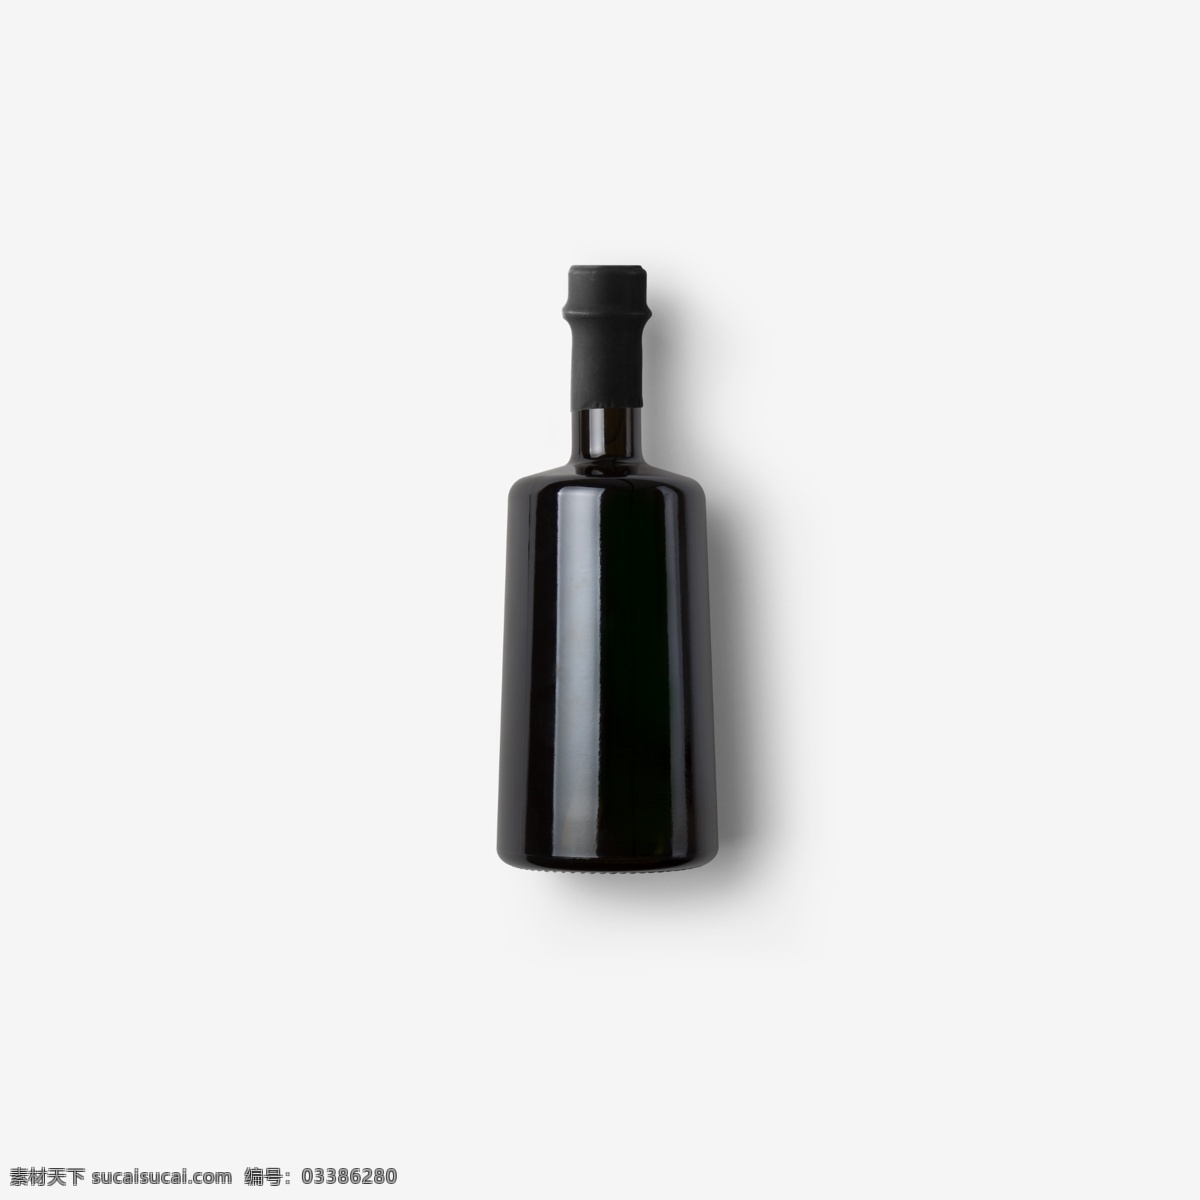 平面 vi 提案 样机 智能对象 玻璃瓶 红酒瓶 酱油瓶 洋酒 高端 大气 上档次 瓶子包装 包装瓶 酒瓶 蓝莓果汁 饮料瓶 贴图模板